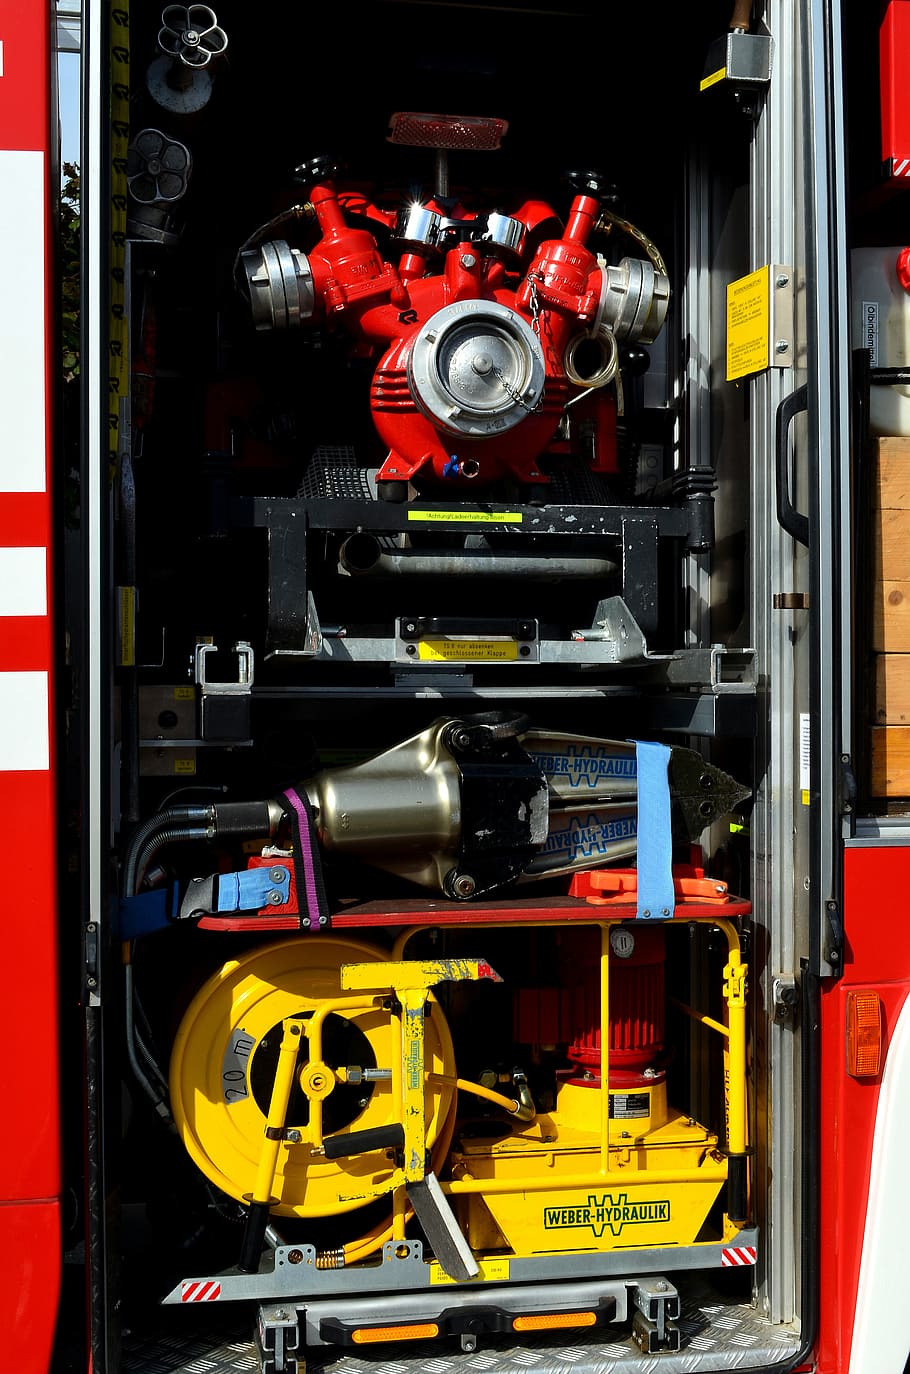 fuego, equipo de bombero, equipo camión de bomberos, camión de bomberos, equipo, conexiones del departamento de bomberos, distribuidor hidráulico de bomberos, vehículos, herramientas, bomba hidráulica